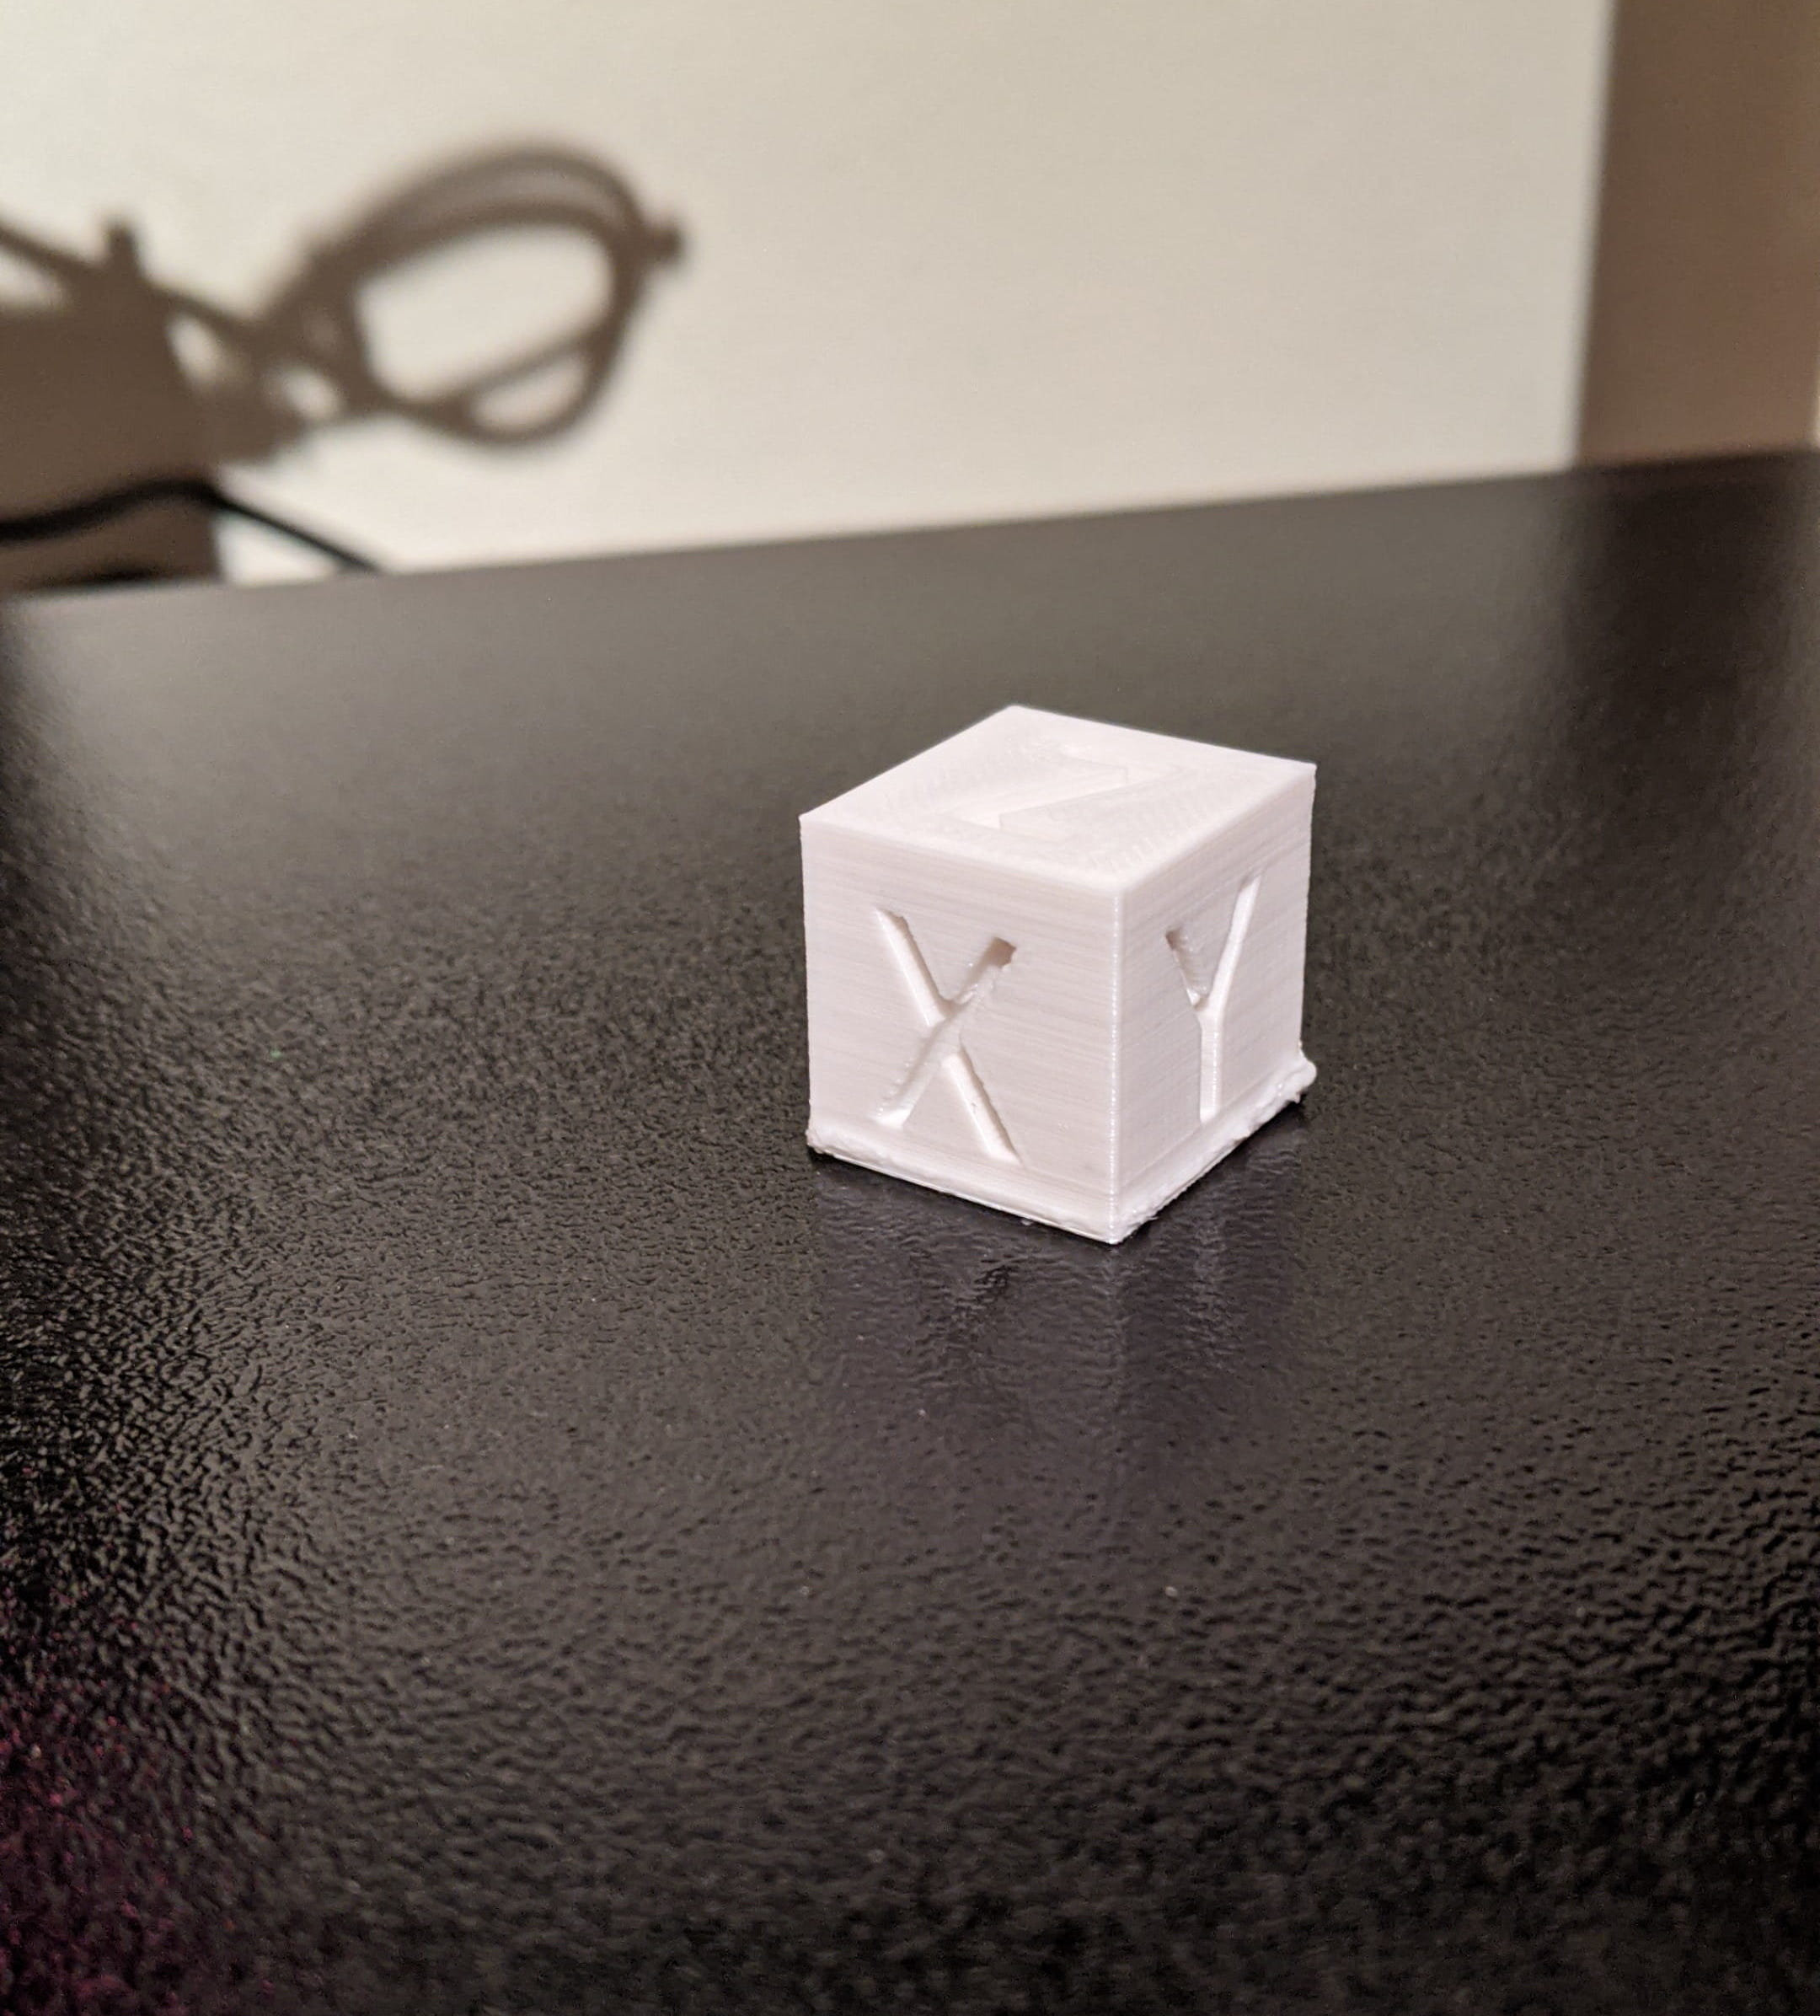 Unter den ersten Gegenständen die gedruckt wurden, war natürlich ein Calibration Cube: https://www.thingiverse.com/thing:1278865